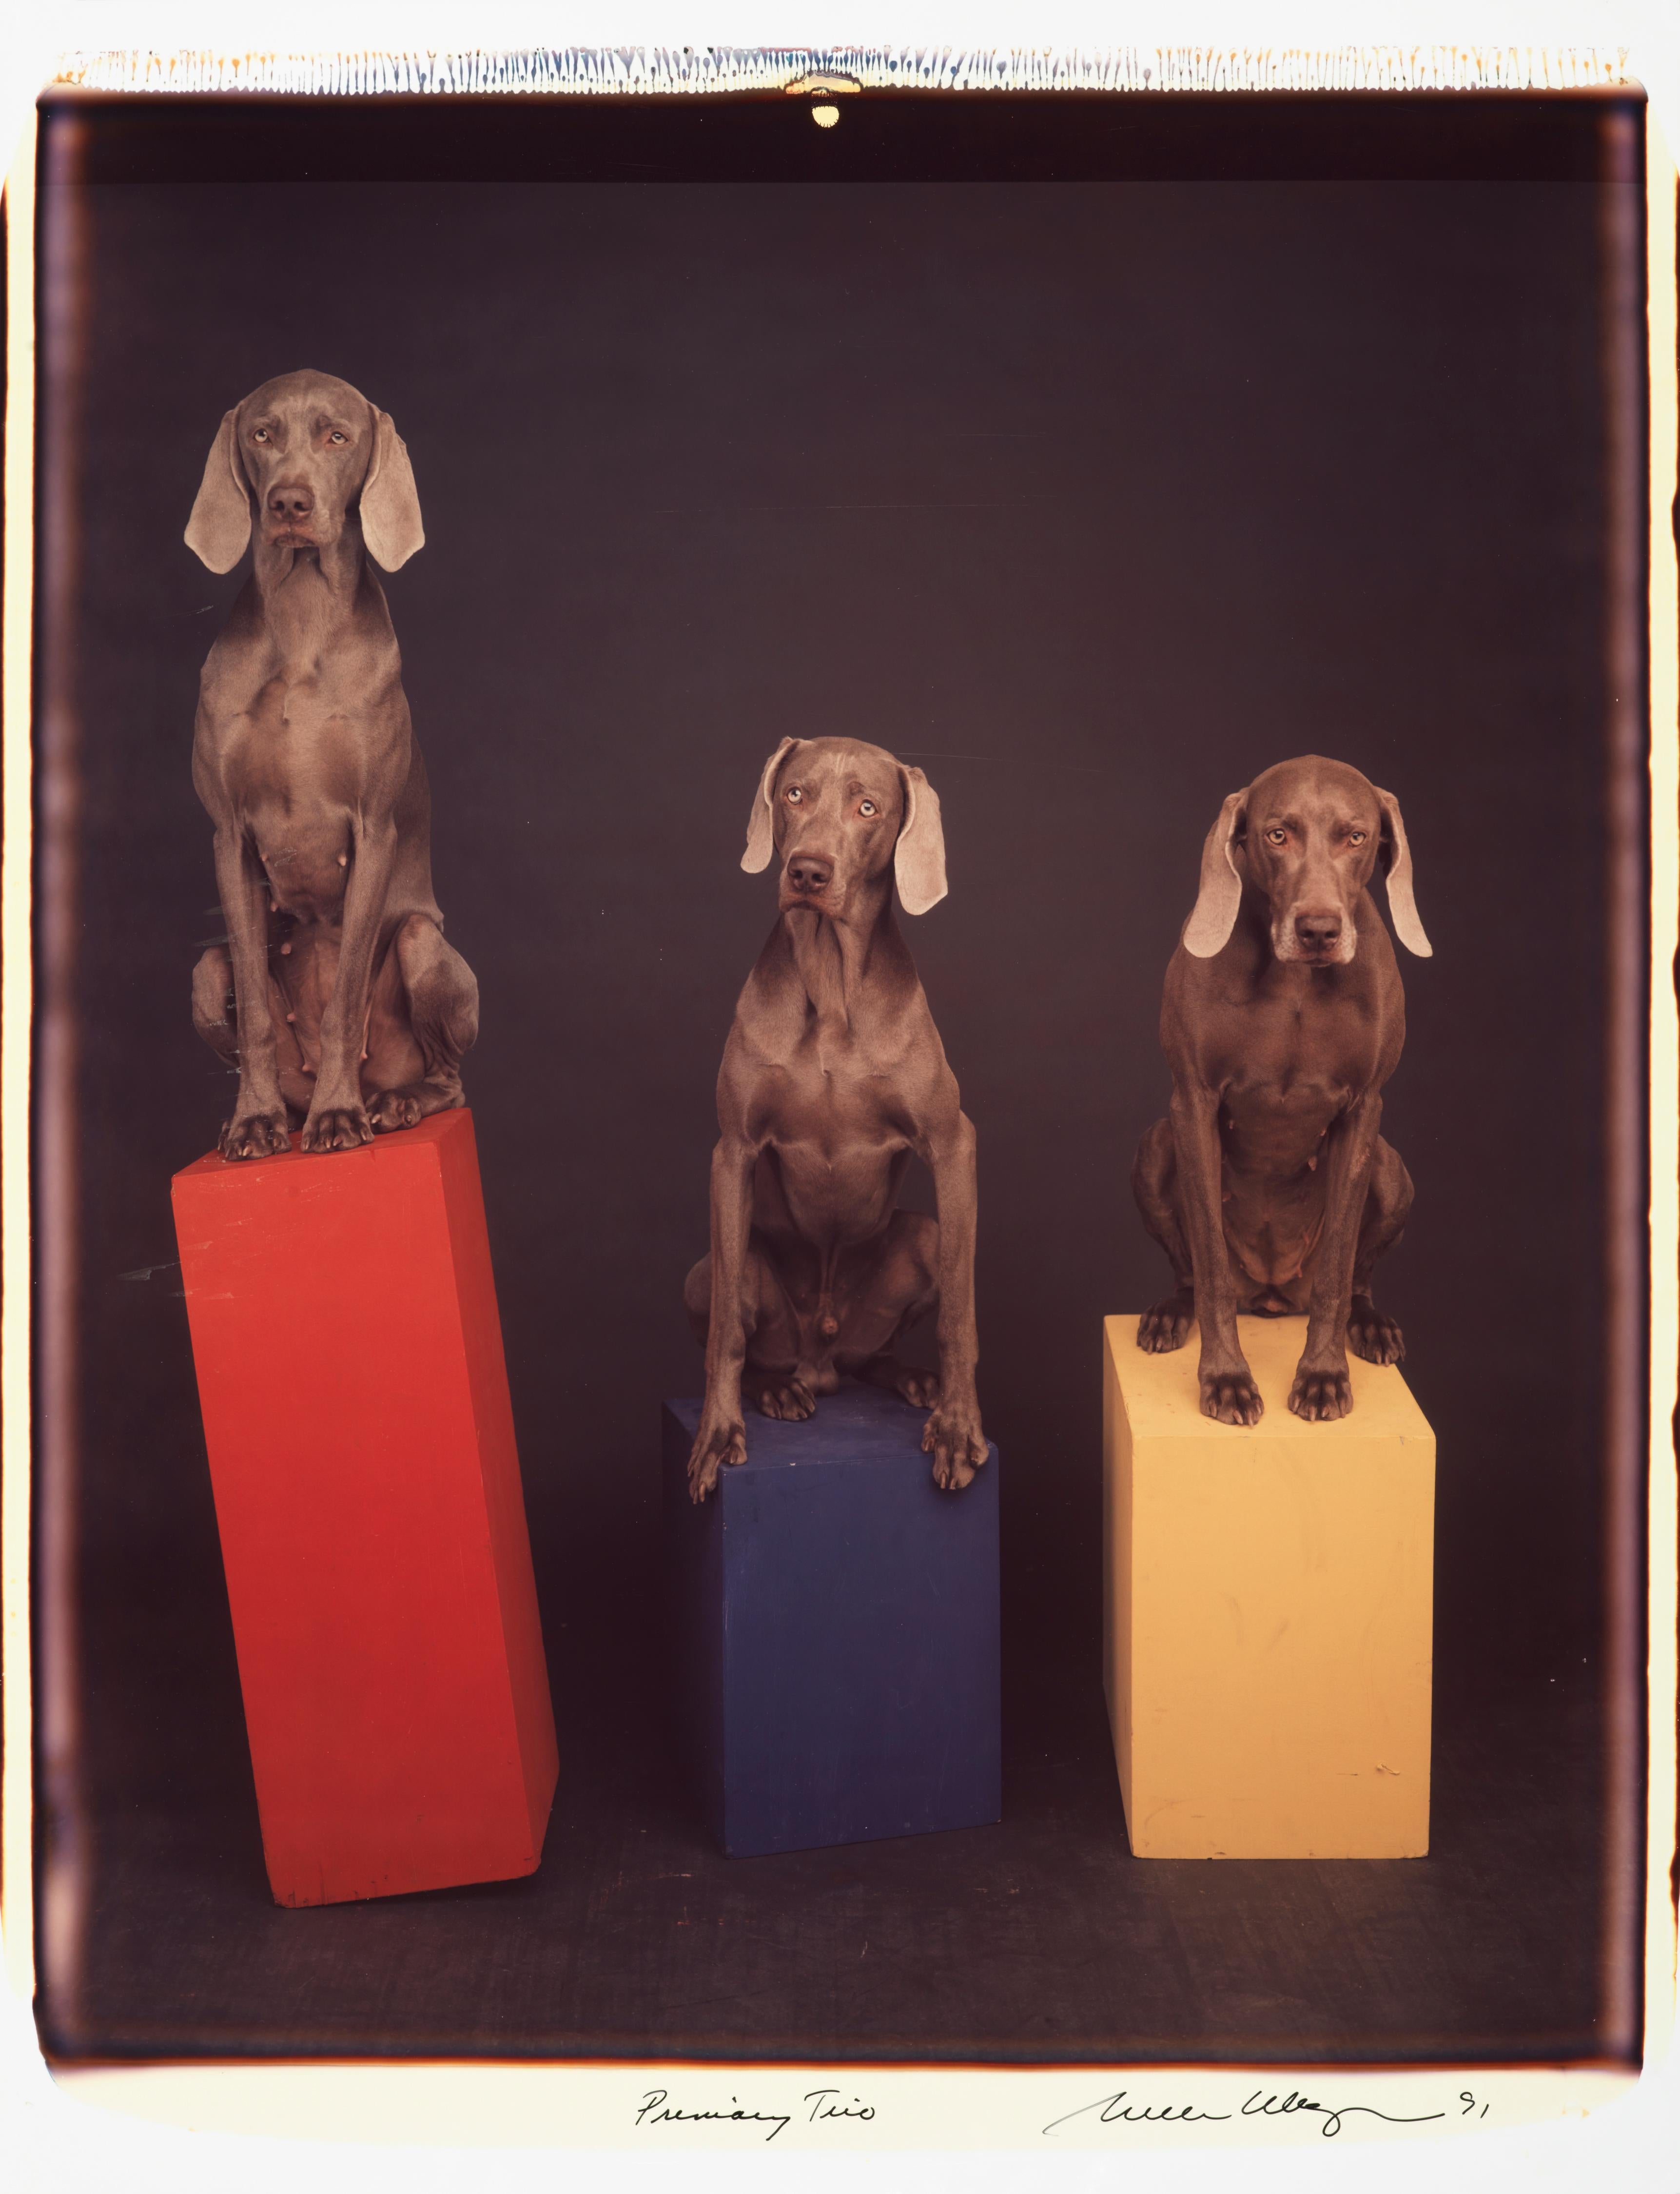 Primary Trio - William Wegman (Farbfotografie)
Signiert und beschriftet mit Titel
Einzigartiger Farb-Polaroiddruck, gedruckt 1991
24 x 20 Zoll

Die Hunde, die mit Perücken, Kostümen und Requisiten ausgestattet sind, zeigen eine breite Palette